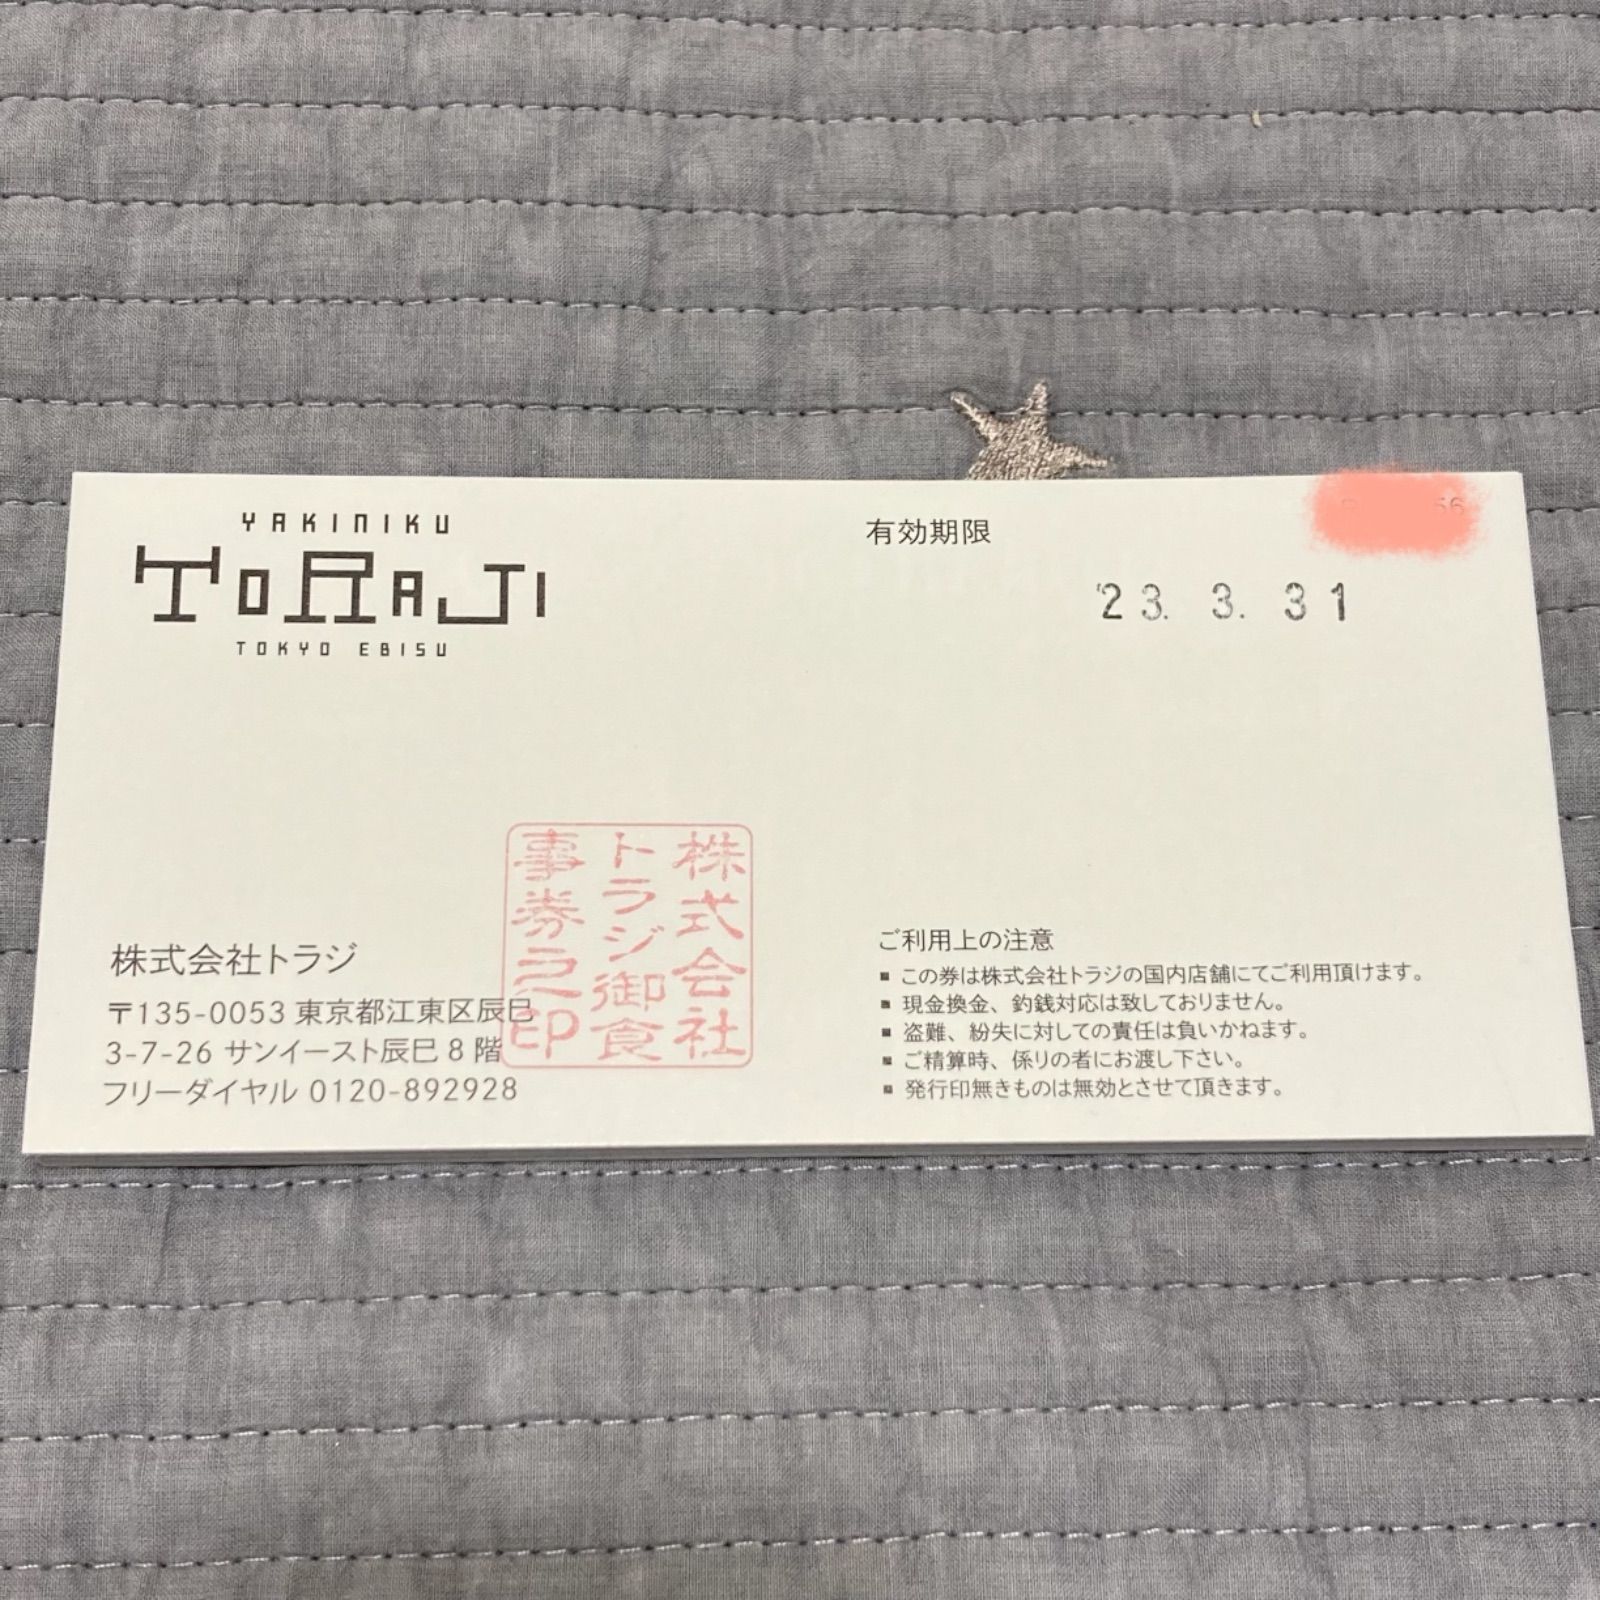 食事券 焼肉 トラジ TORAJI 5000円分